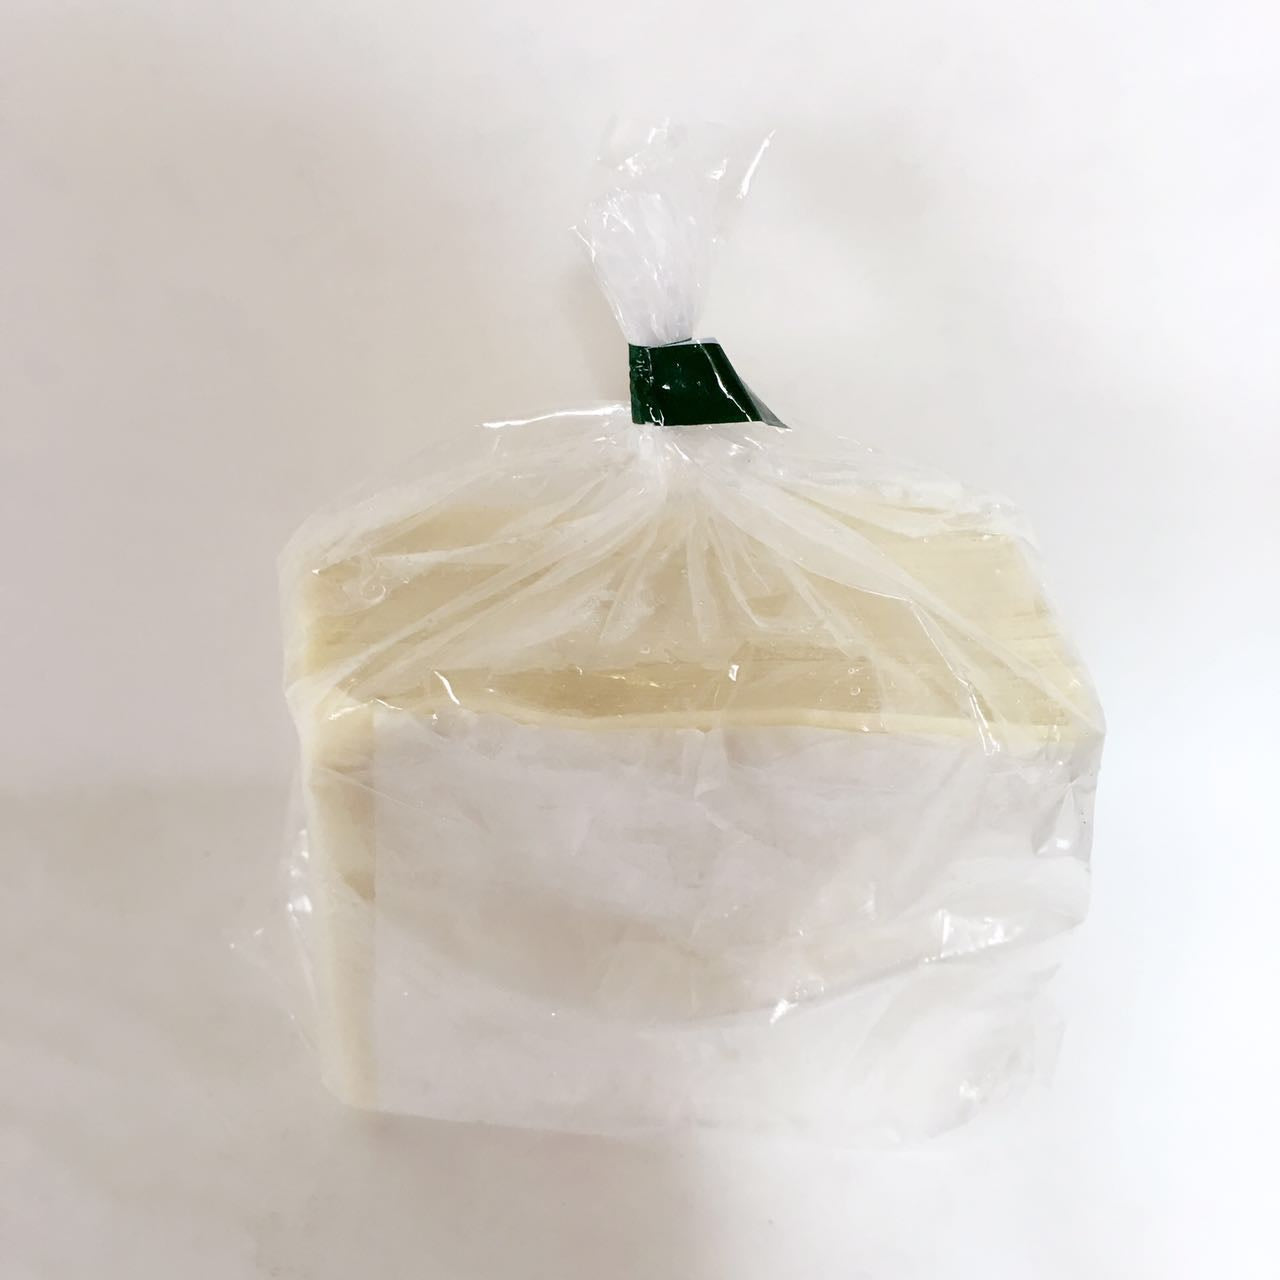 大雲呑皮 (約35枚）500g 日本国内加工 八幡製麺所 冷凍品